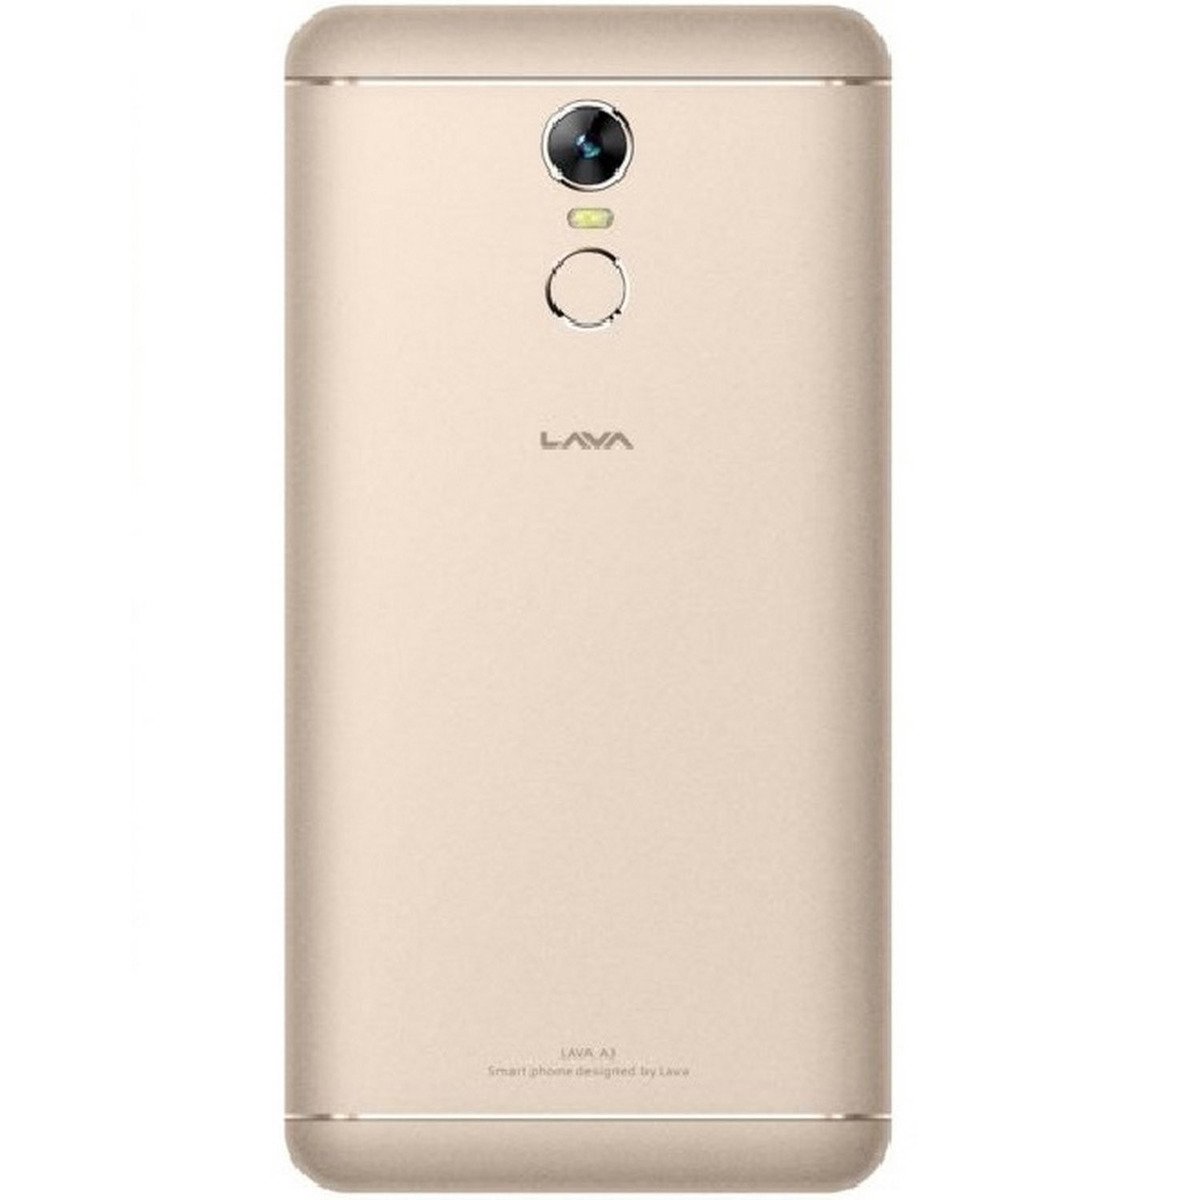 Lava A3 32GB LTE Gold